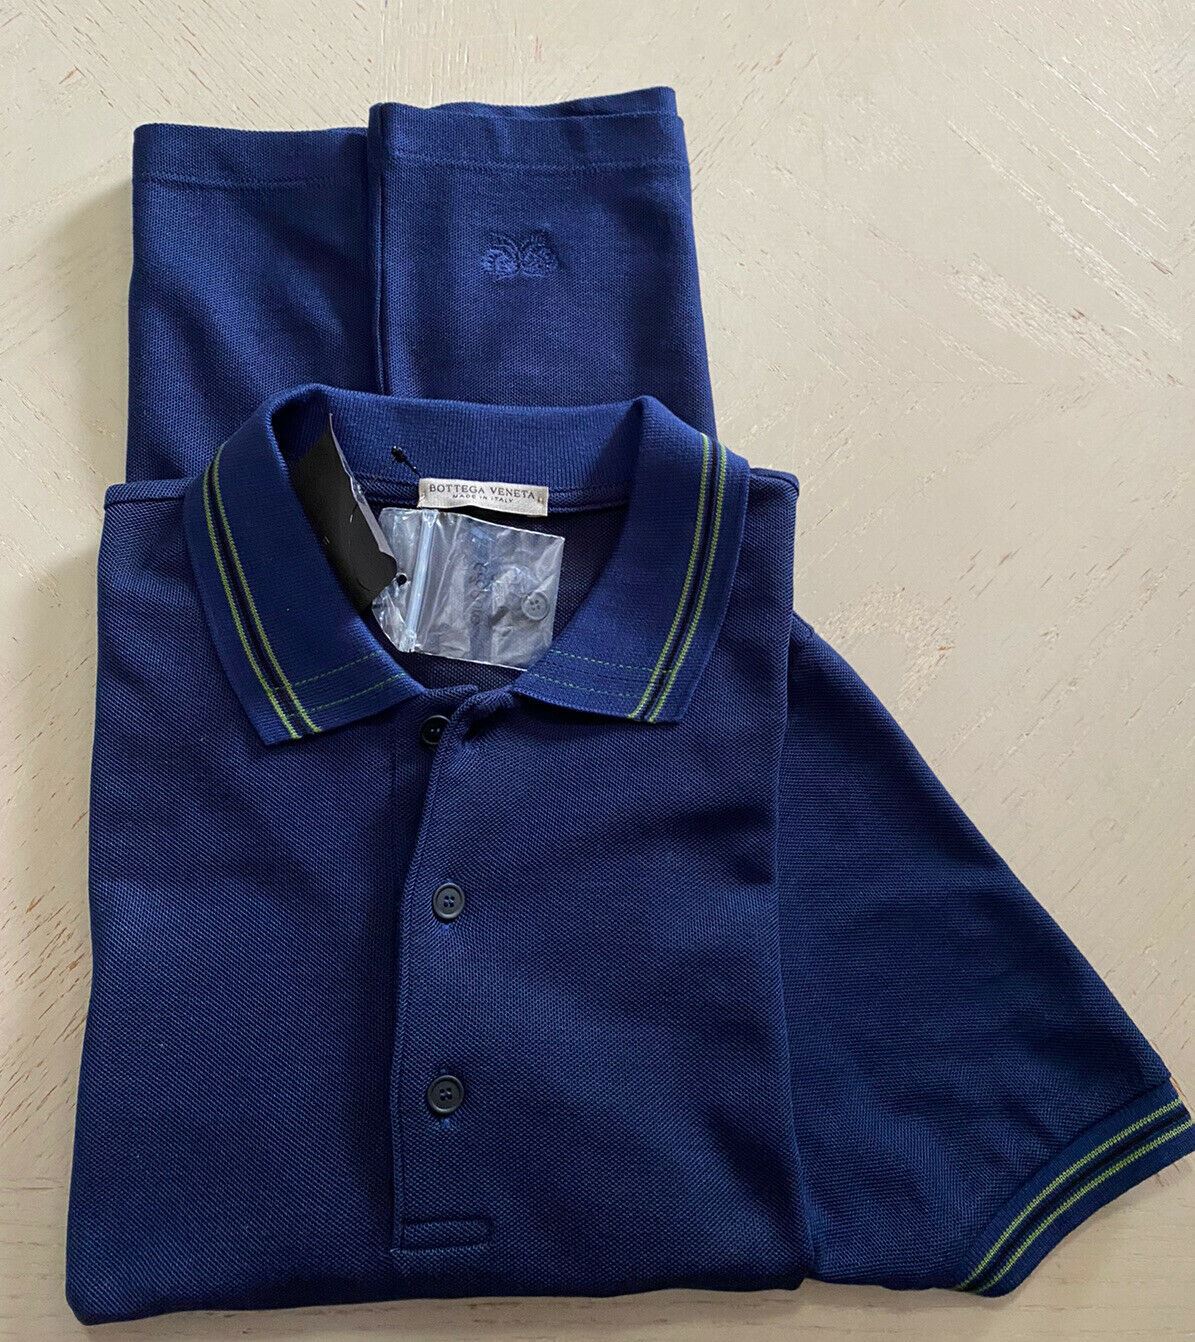 Neu mit Etikett: 390 $ Bottega Veneta Herren-Poloshirt Blau S US (46 Eu) Italien